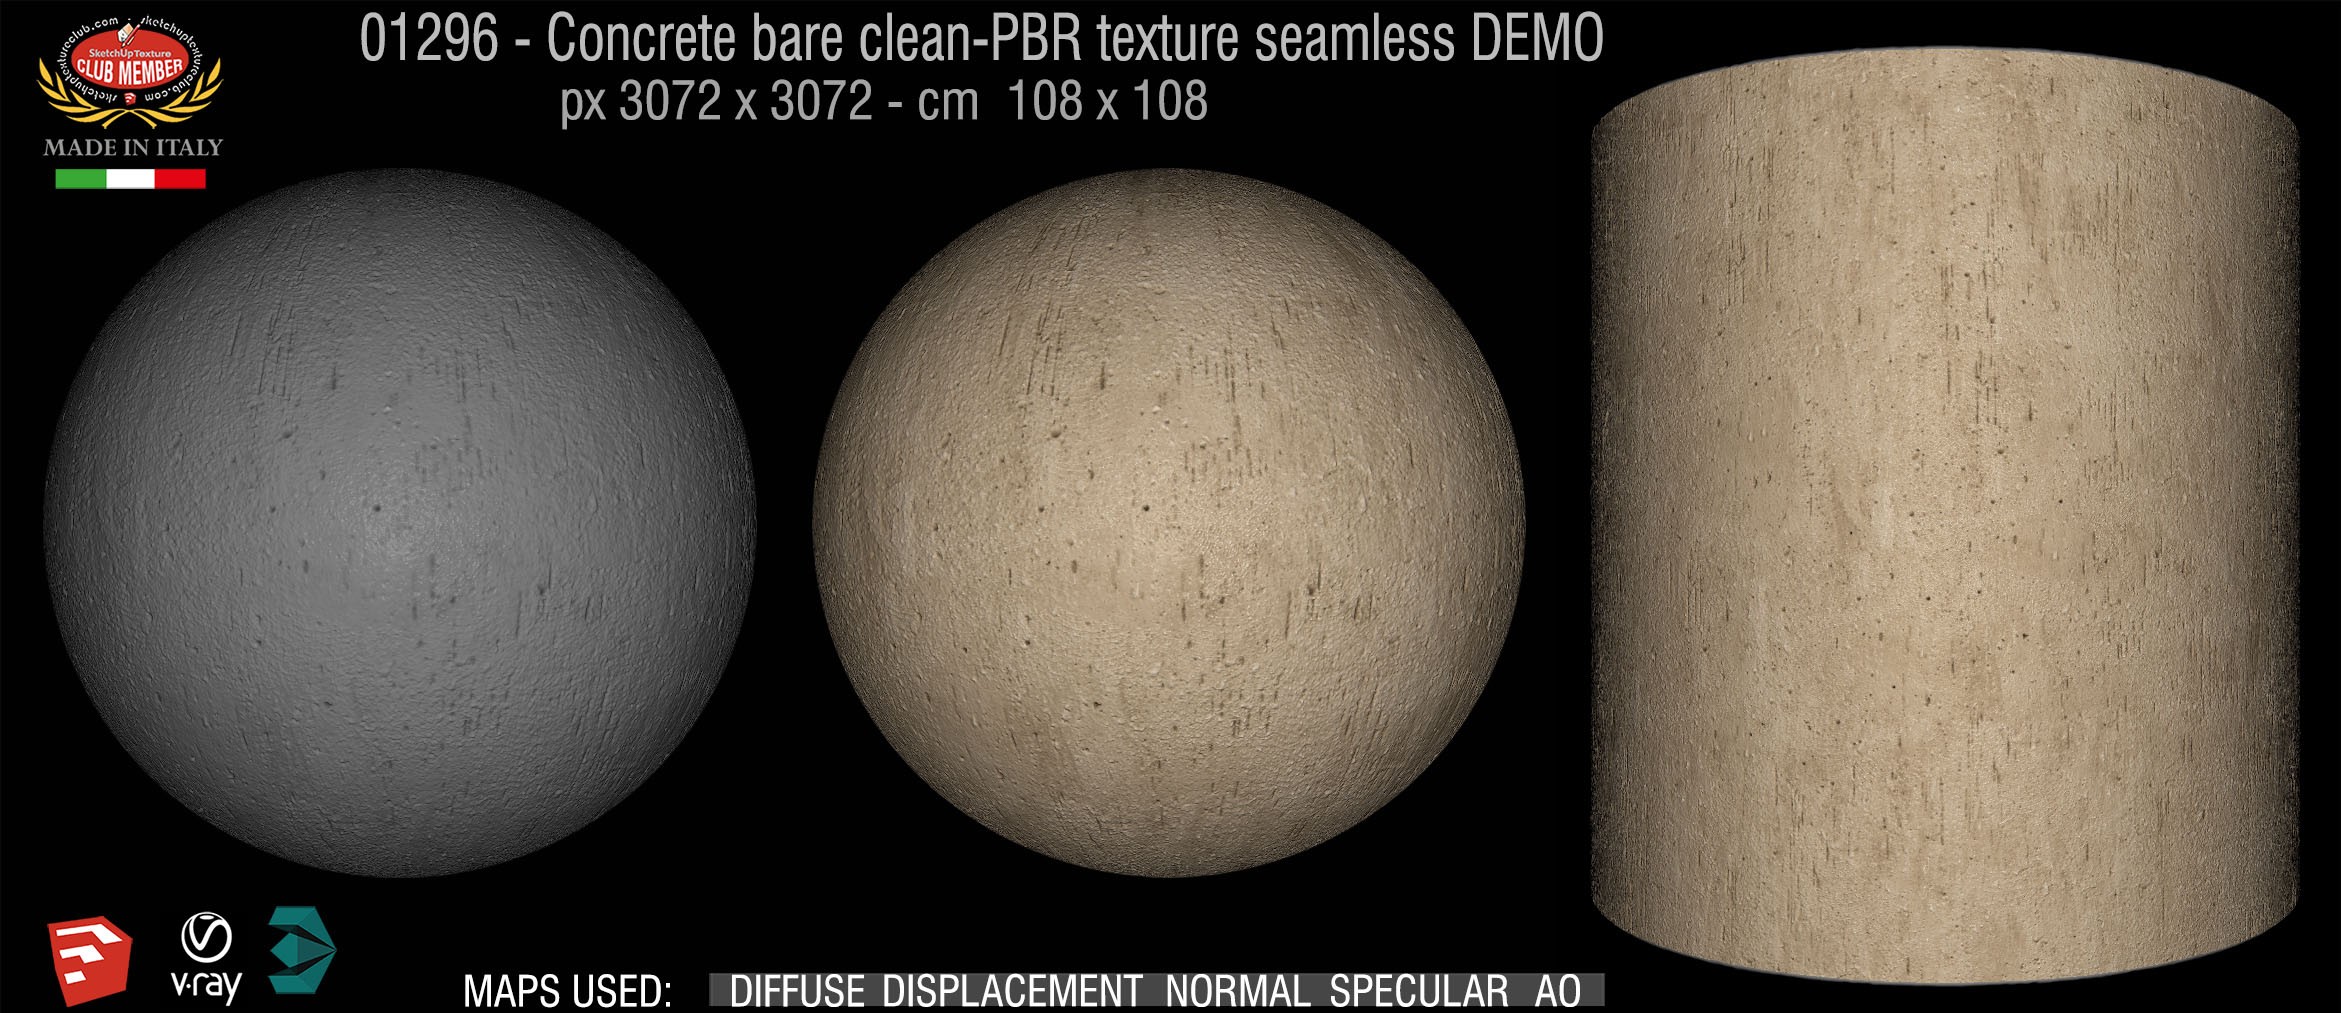 01296 Concrete bare clean-PBR texture seamless DEMO